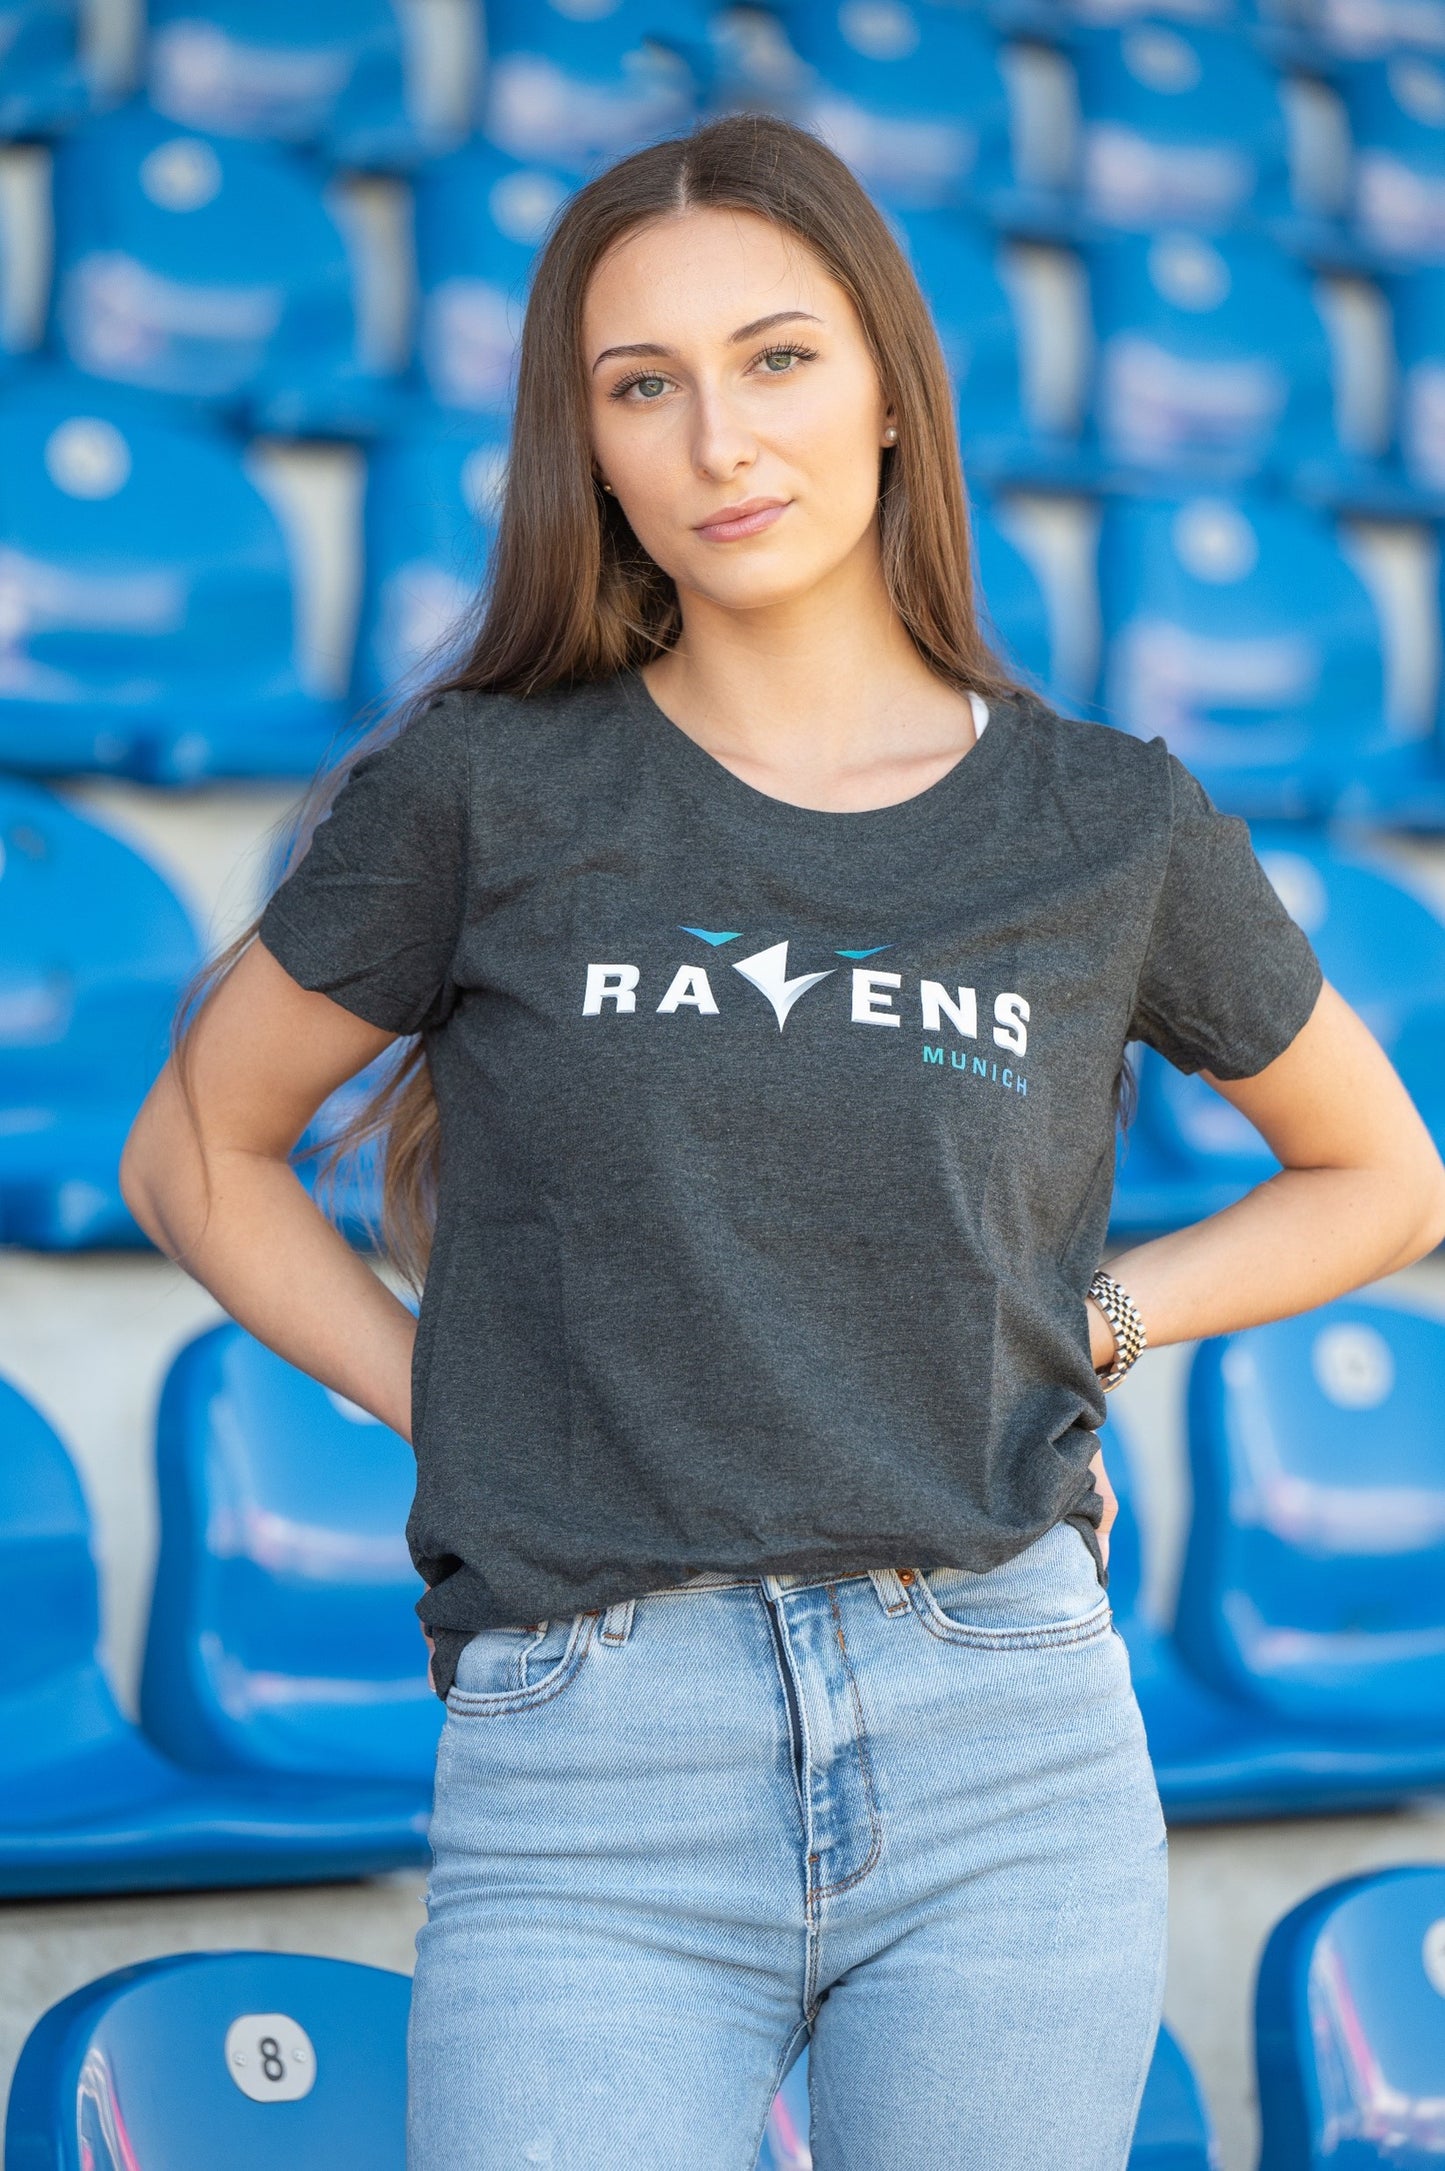 Women's T-Shirt "Munich Ravens"